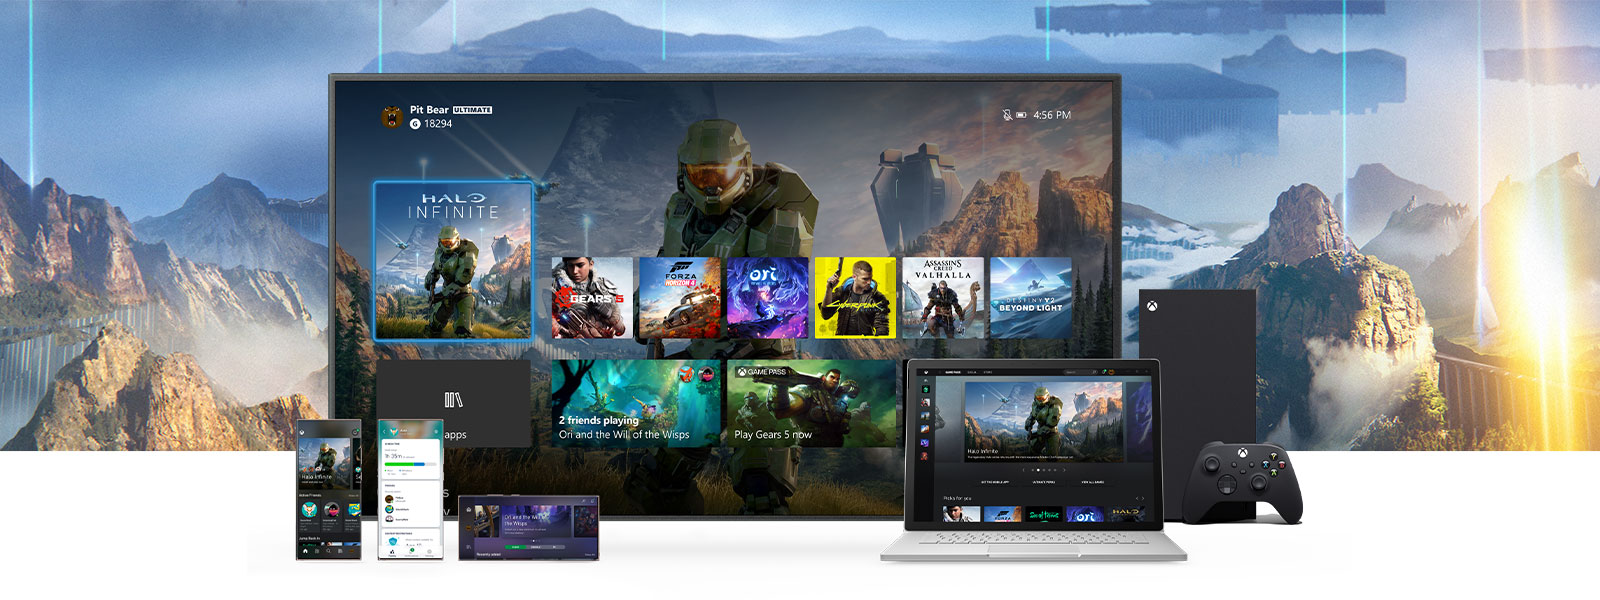 La Interfaz Xbox se muestra en un televisor, junto a una consola Xbox Series X. Otros dispositivos, como un PC y móvil, están delante del televisor.